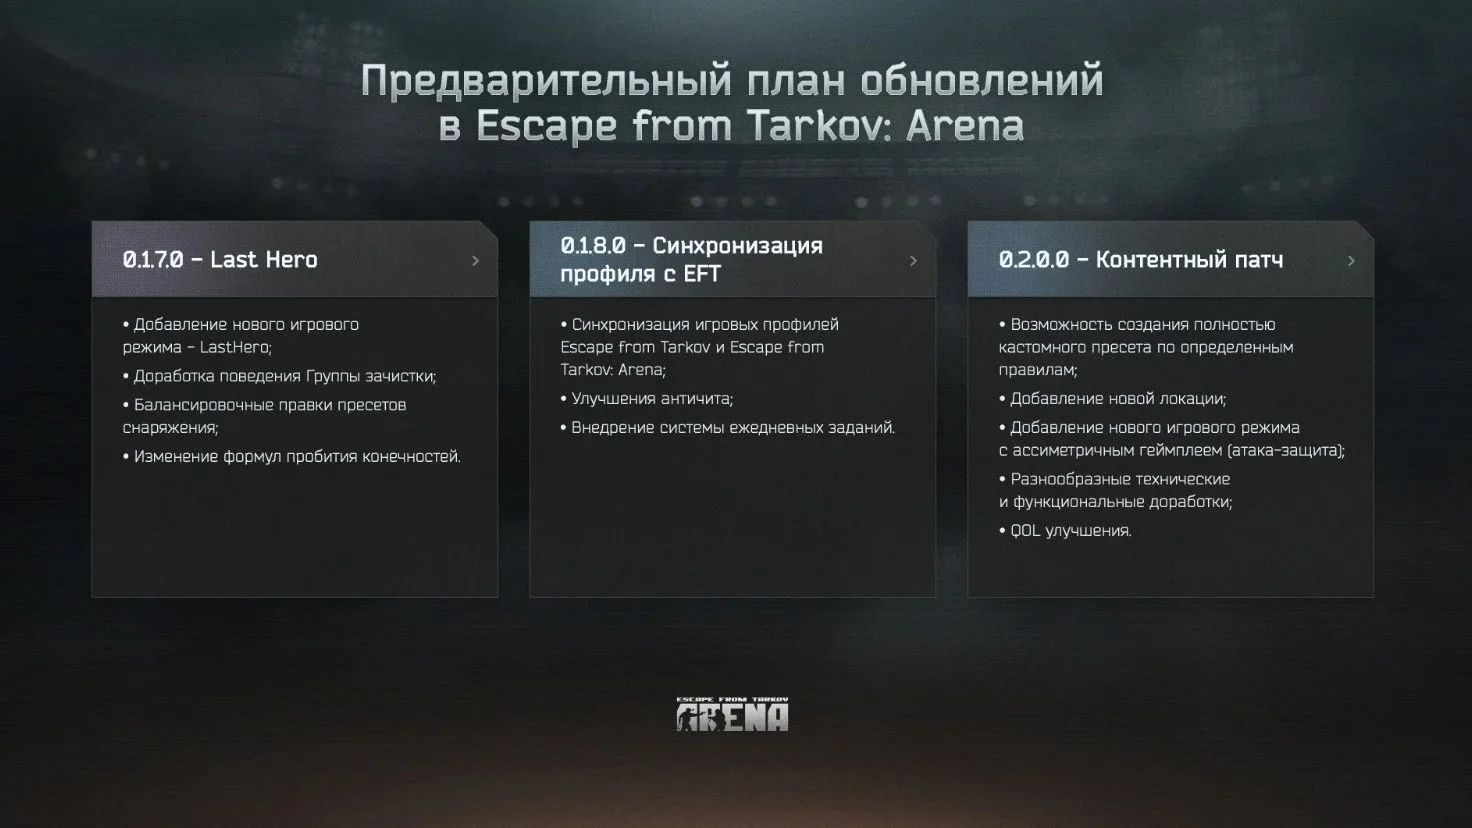 Создатели Escape from Tarkov Arena пересмотрели планы на грядущие обновления - фото 1